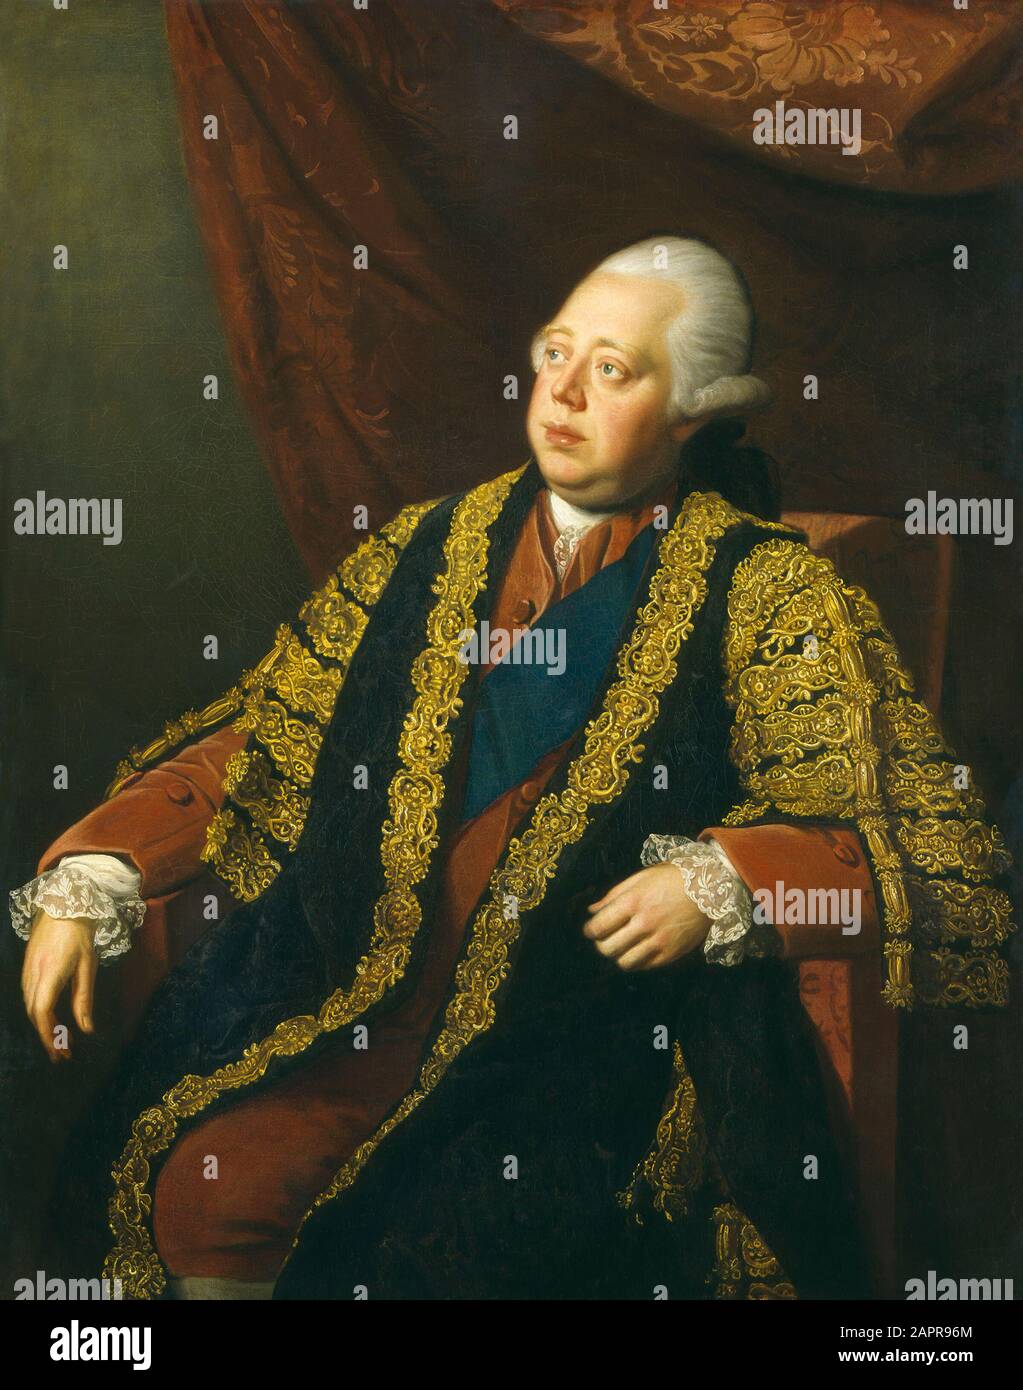 Frederick NORTH, Lord North (1732-1792), primo ministro britannico Foto Stock